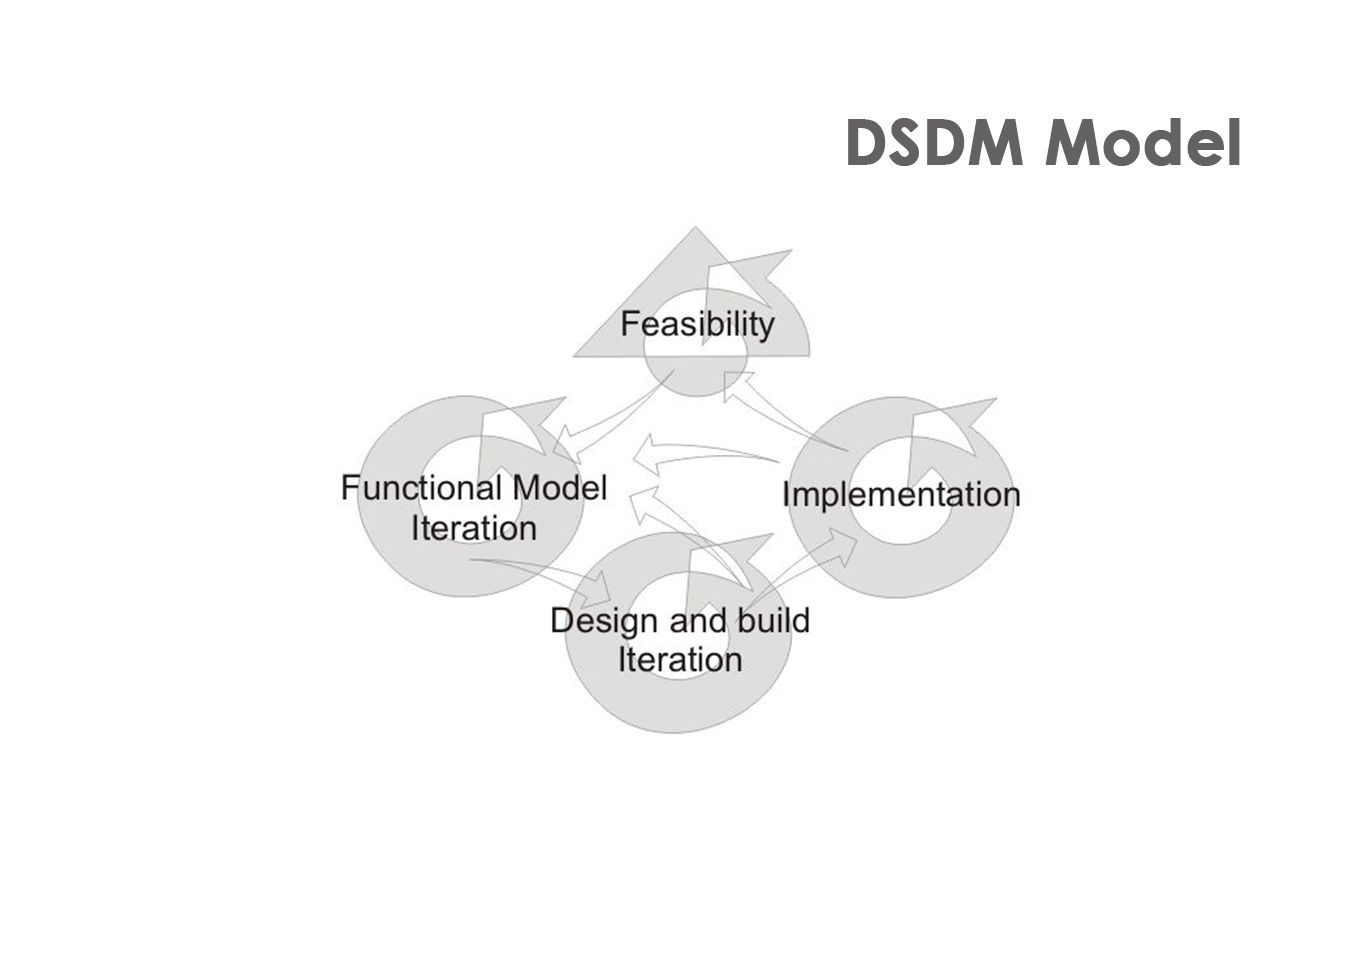 DSDM model